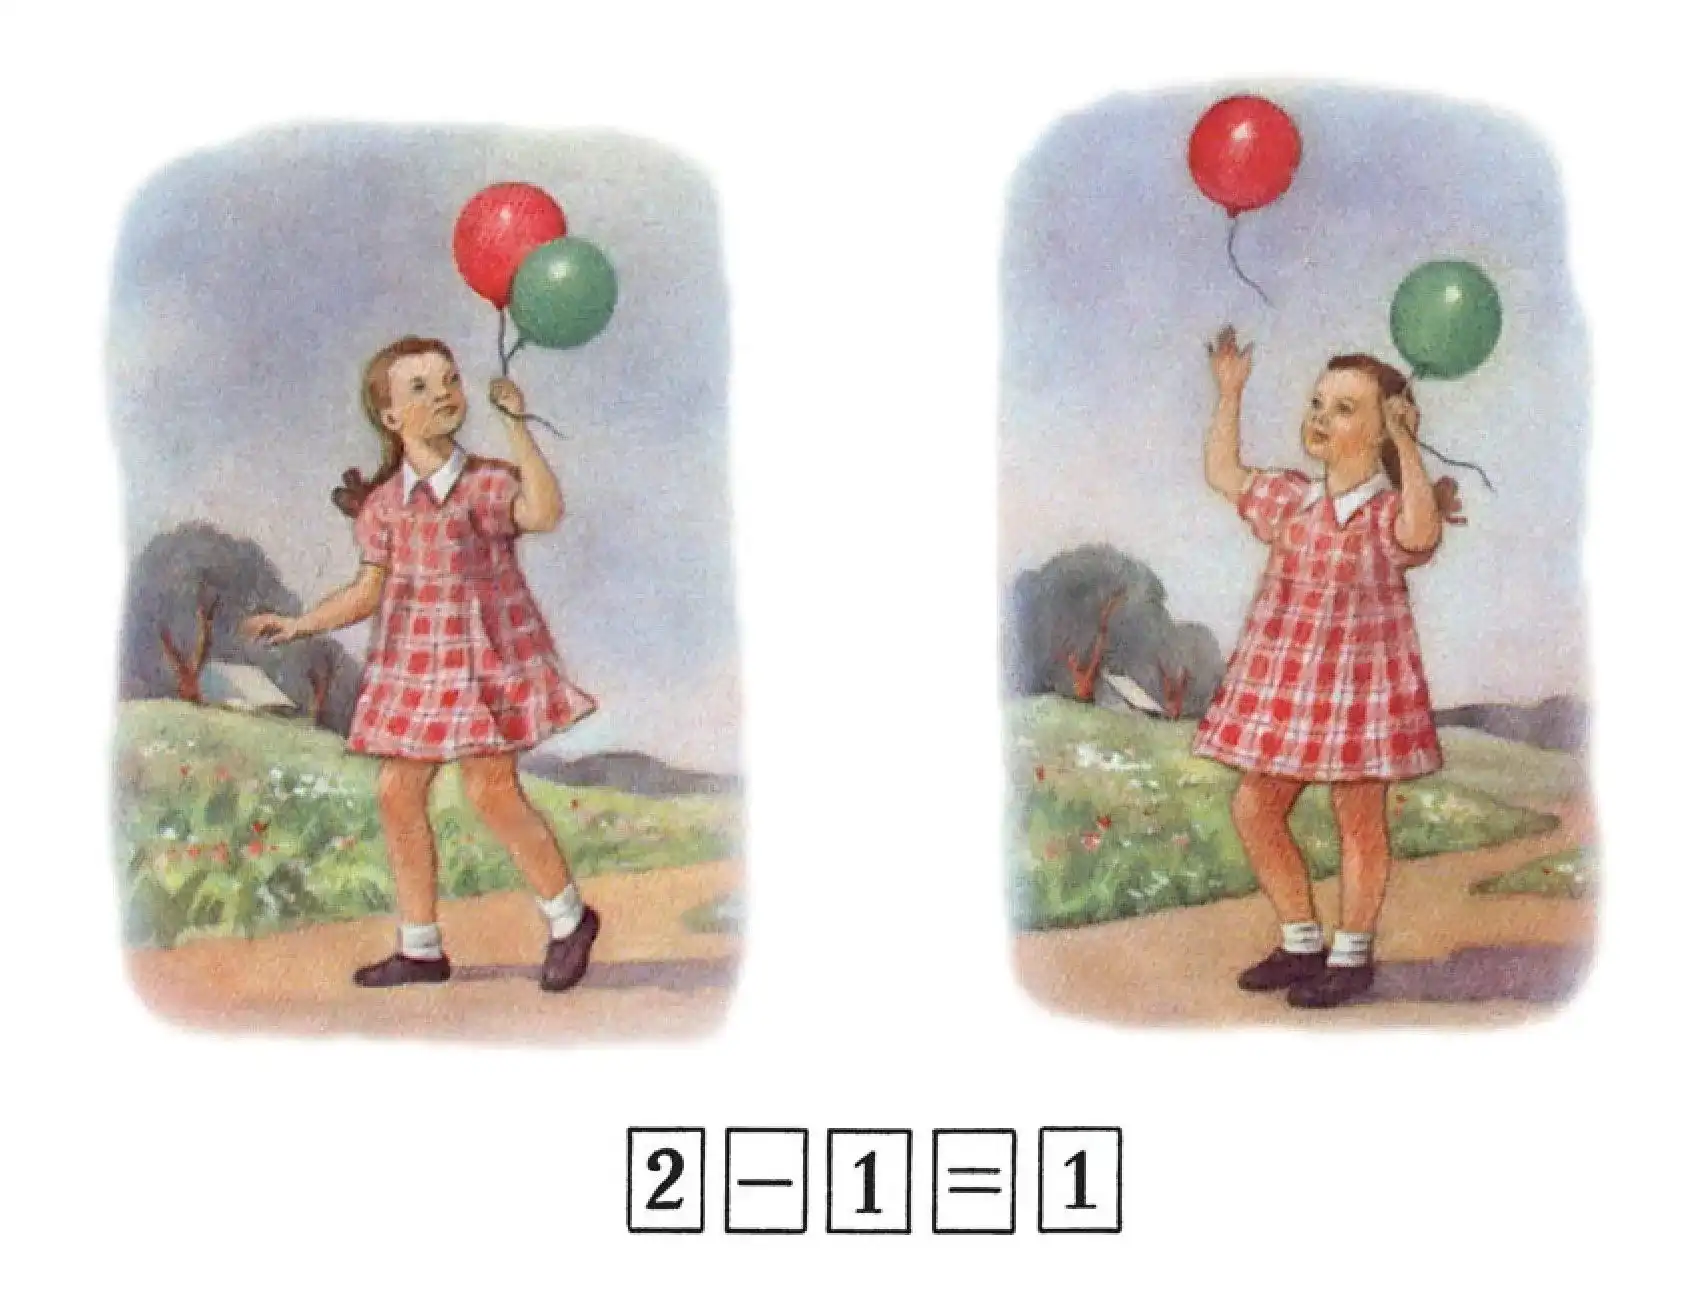 Girl and balloons